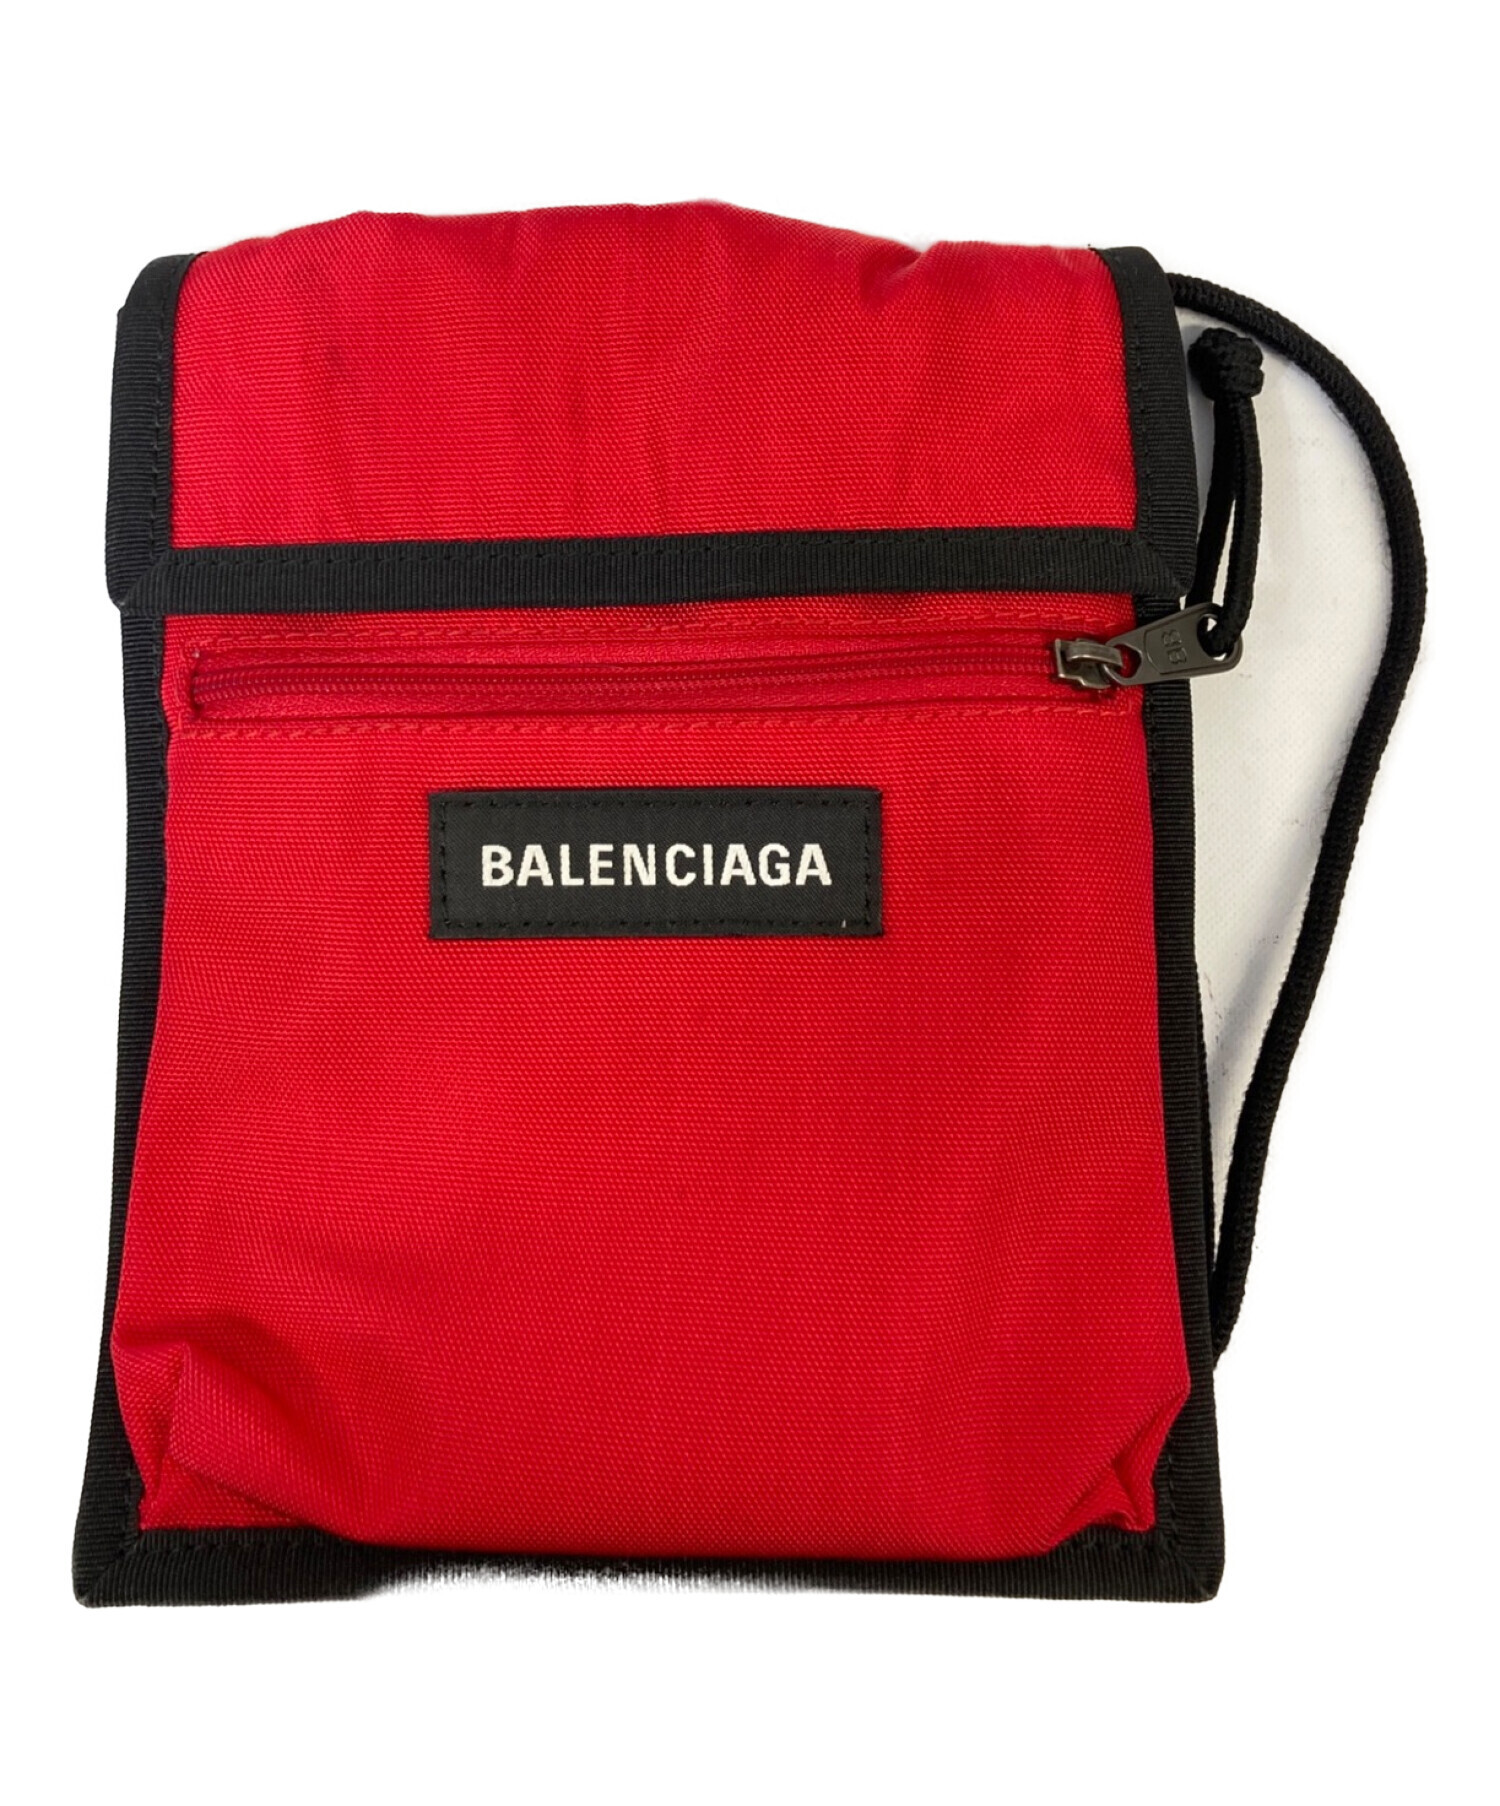 【新品】BALENCIAGA バレンシアガ エクスプローラー ショルダーバッグ